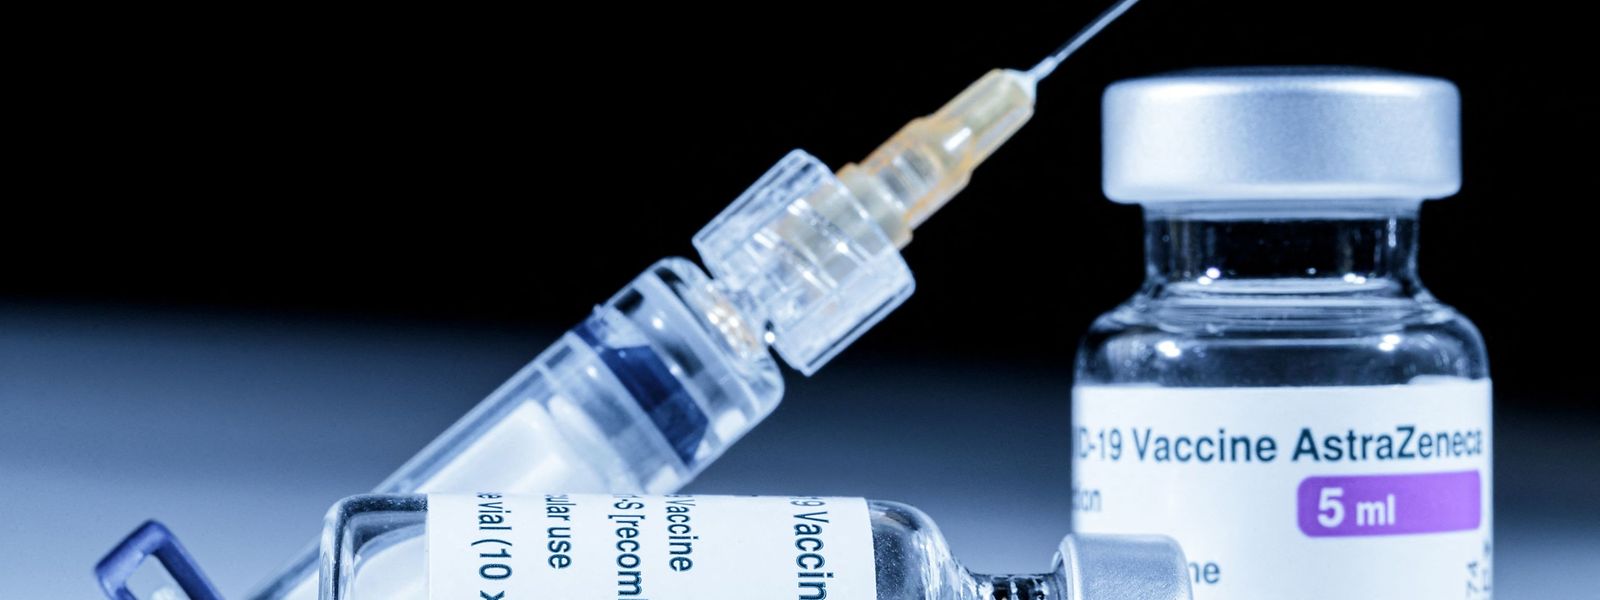 Impfung vorerst auf Eis: Einige Länder setzen ihre Impungen mit Astrazeneca derzeit vorübergehend aus. Andere halten an dem Stoff fest.